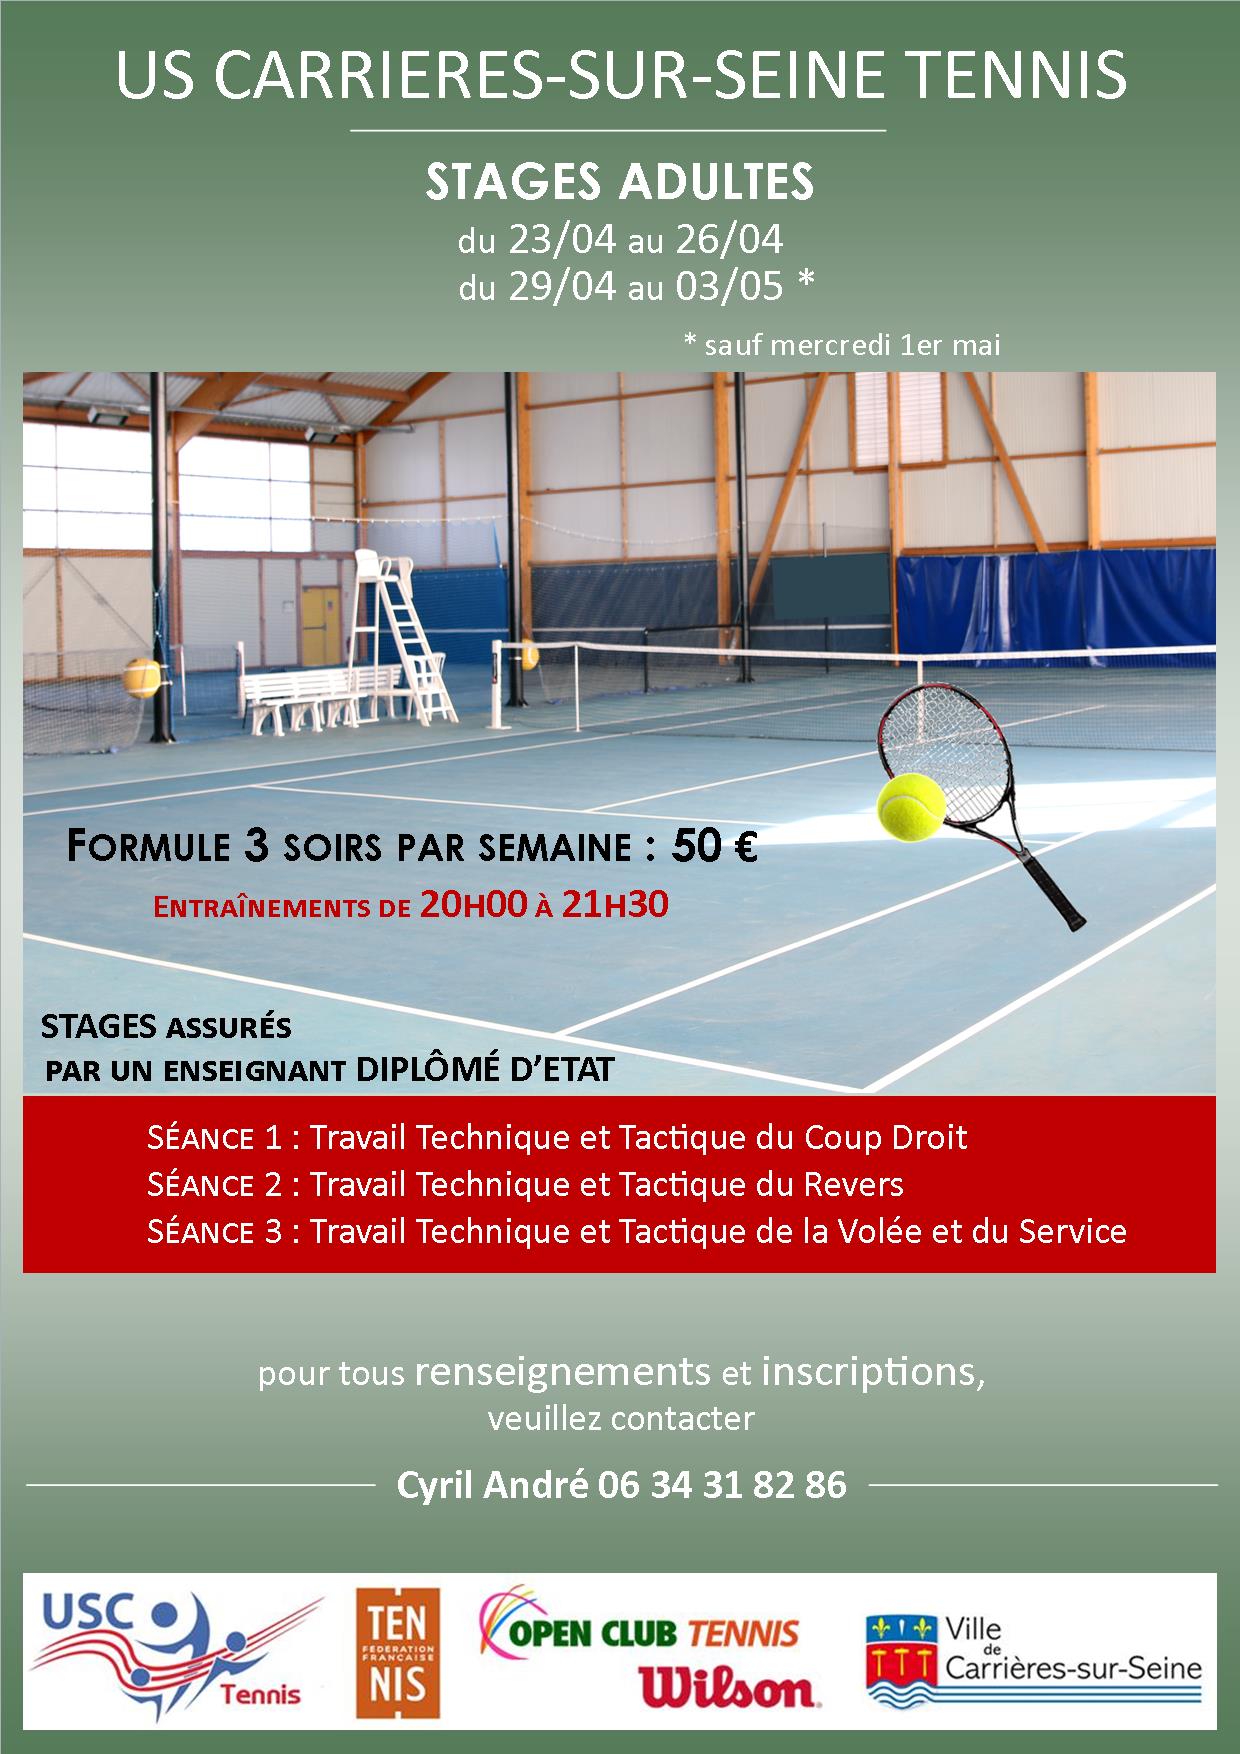 USC Tennis Carrières-sur-Seine